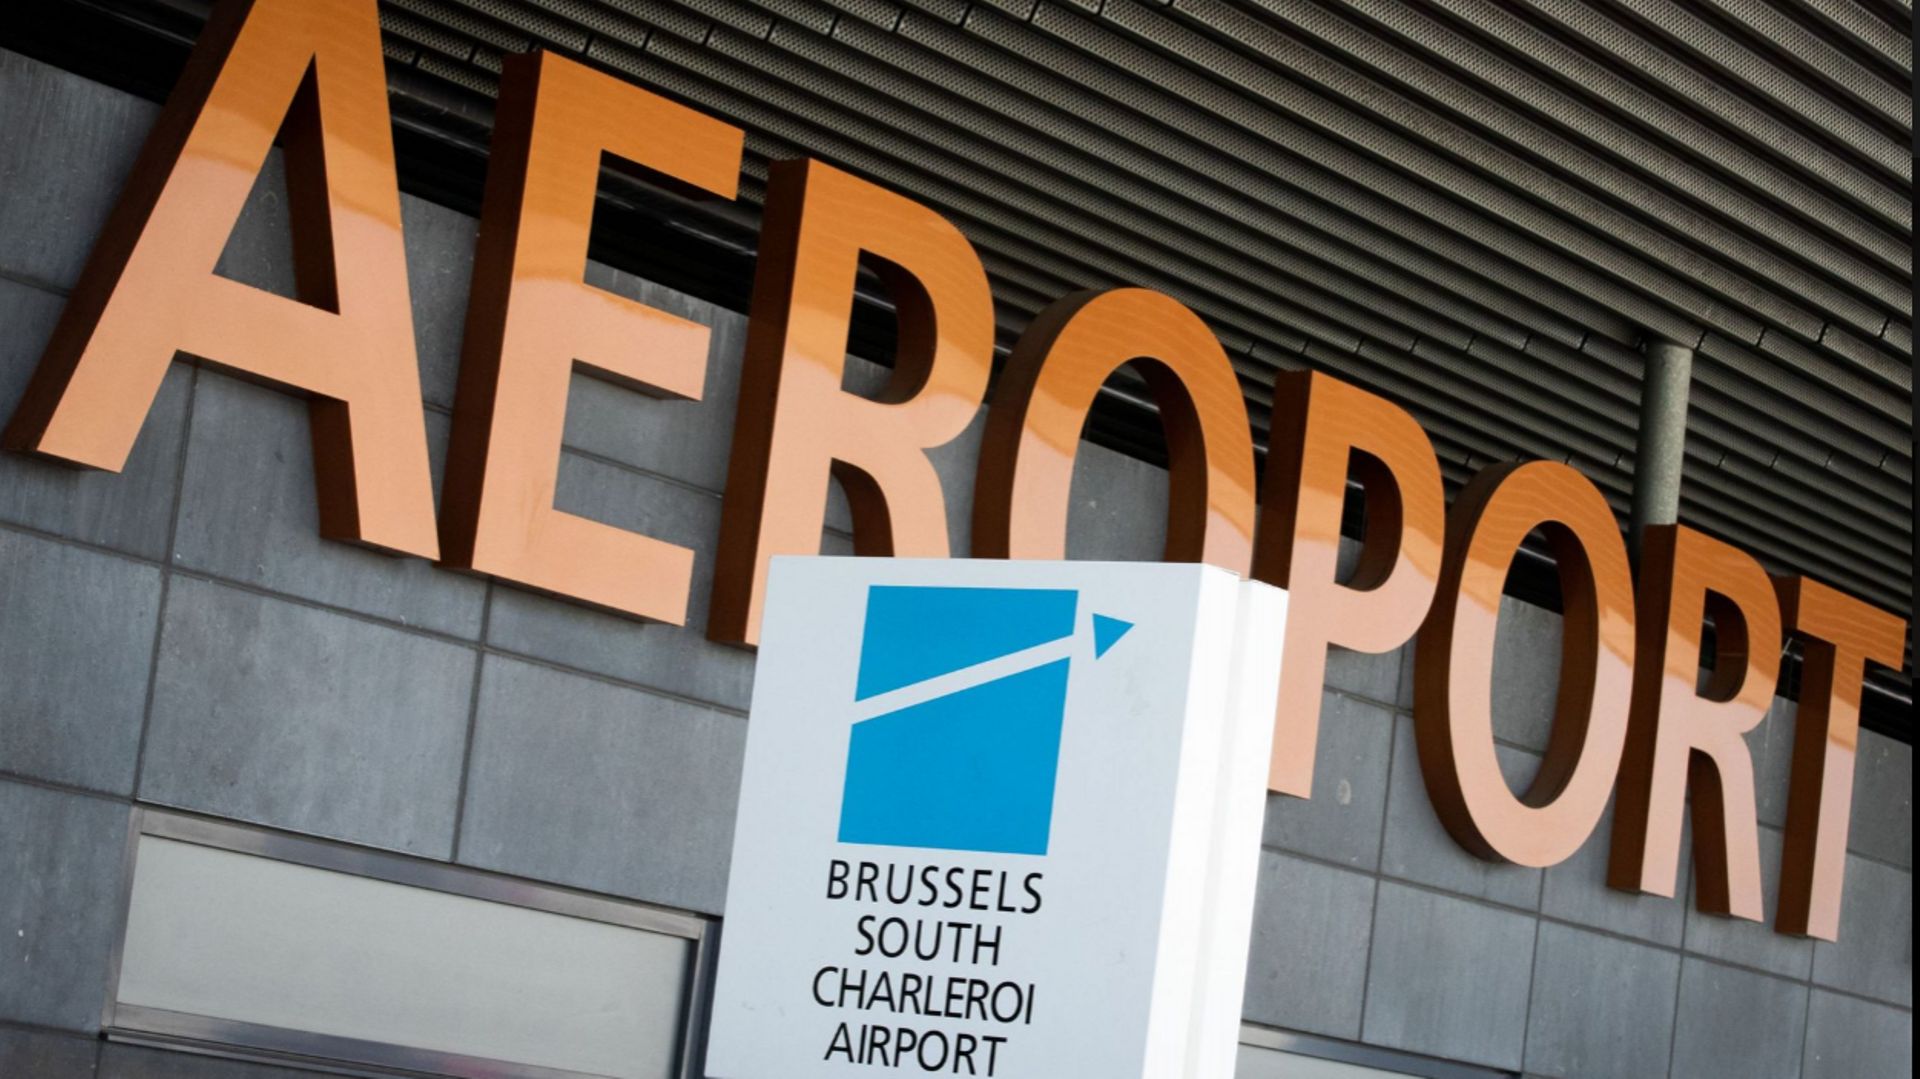 Aéroport de Charleroi : Crucke adresse un carton jaune à la direction